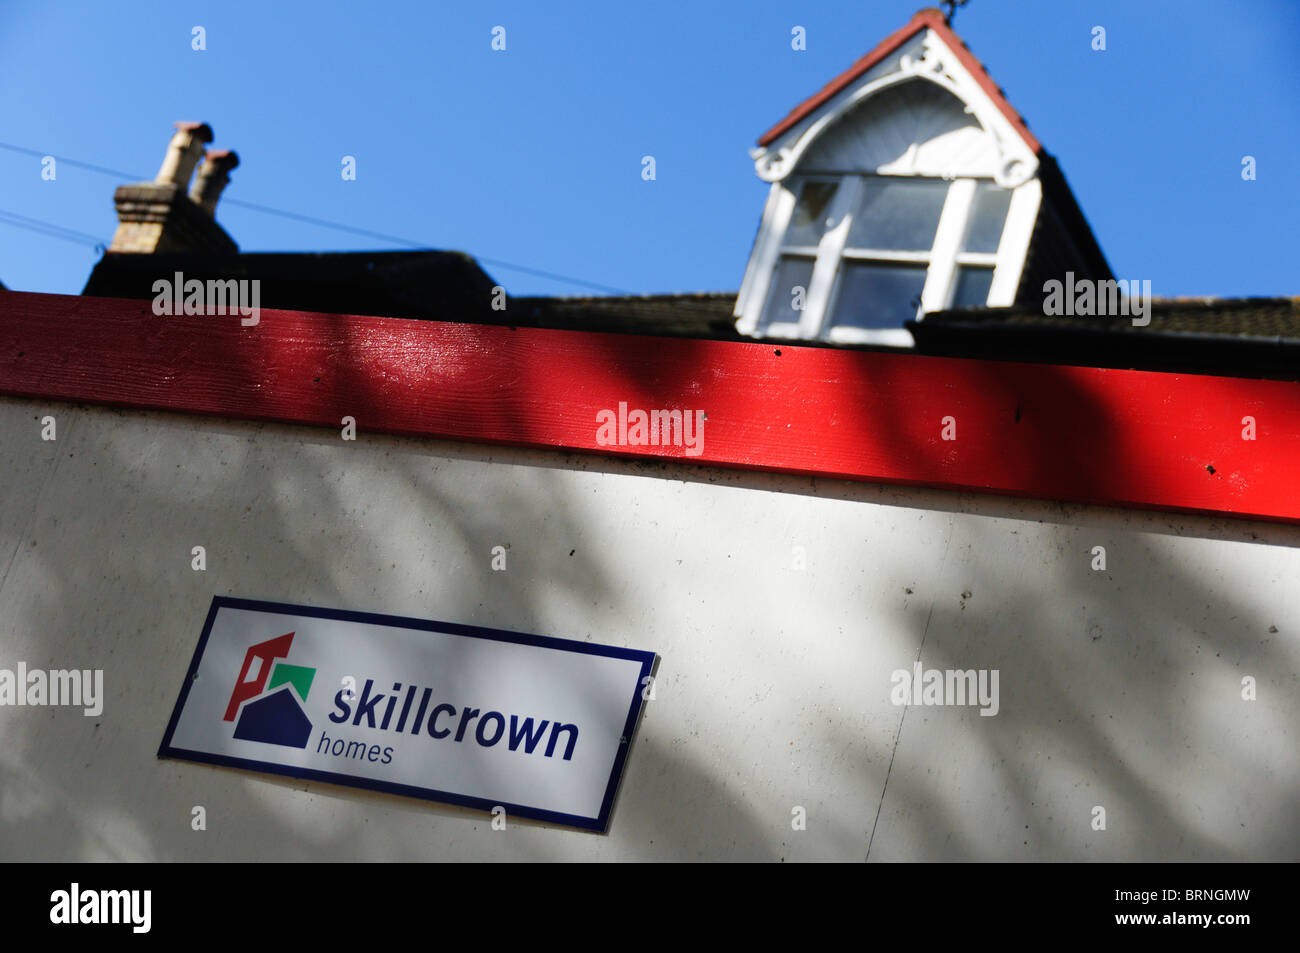 El acaparamiento de un sitio alrededor de una casa que lleva el nombre y el logotipo de Skillcrown casas. Foto de stock